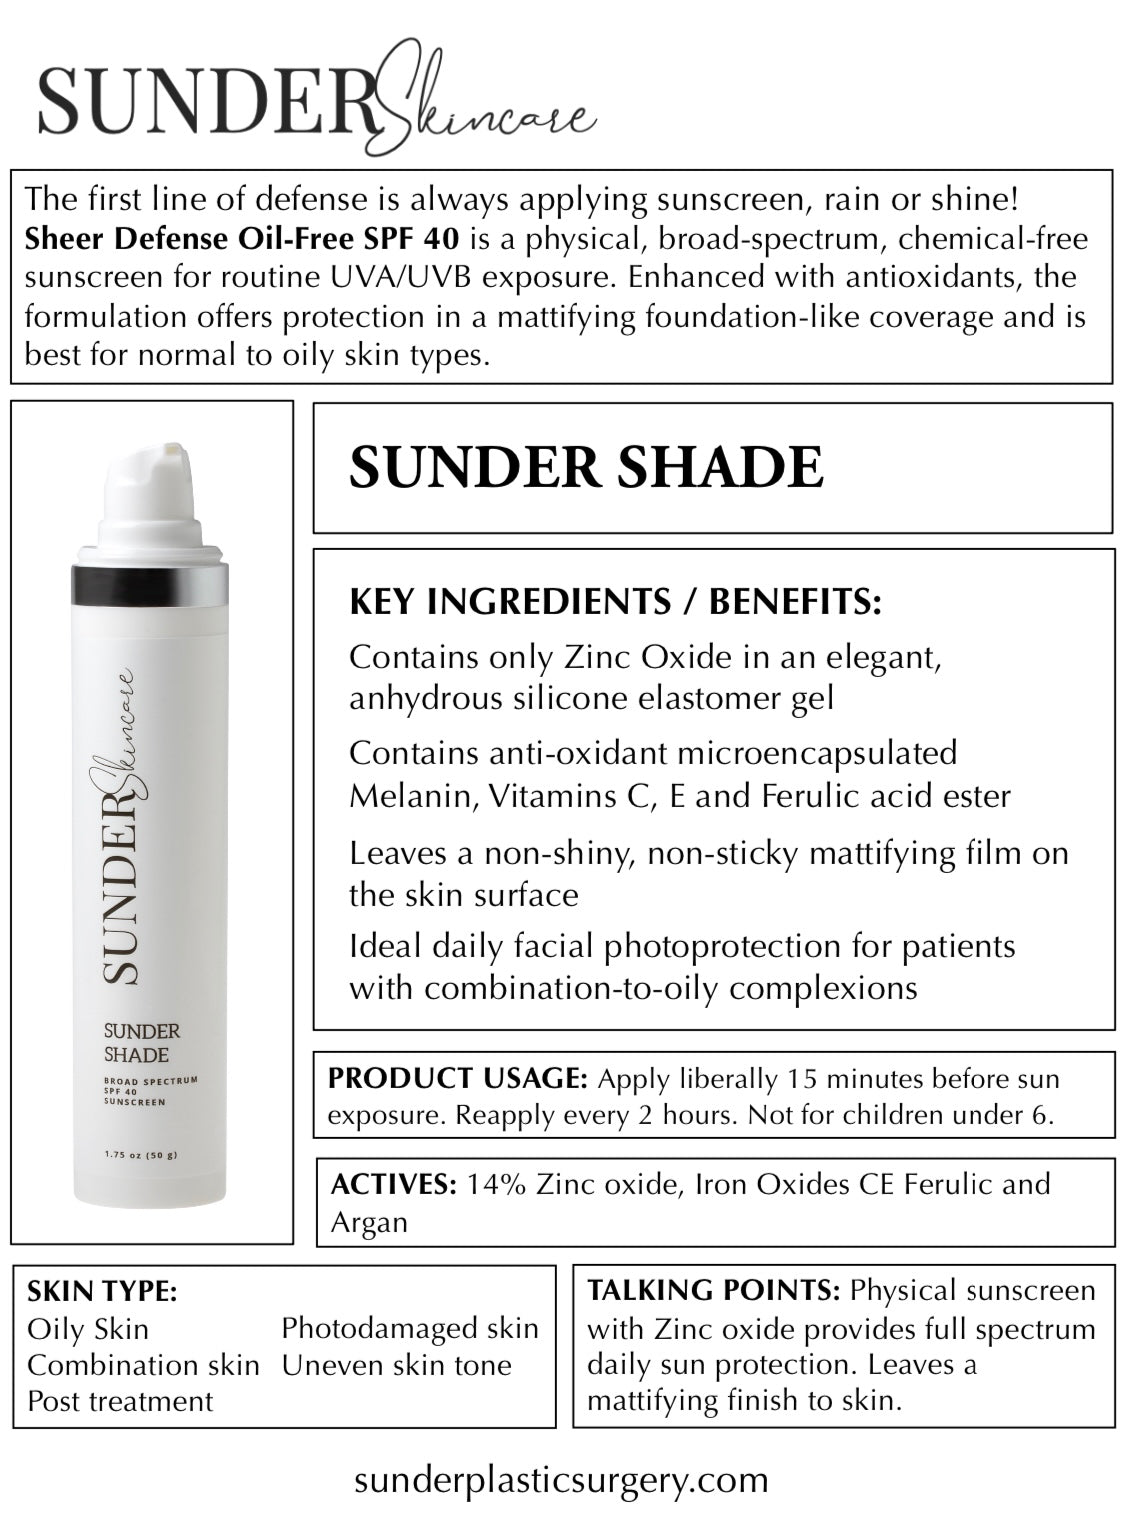 Sunder Shade SPF 40